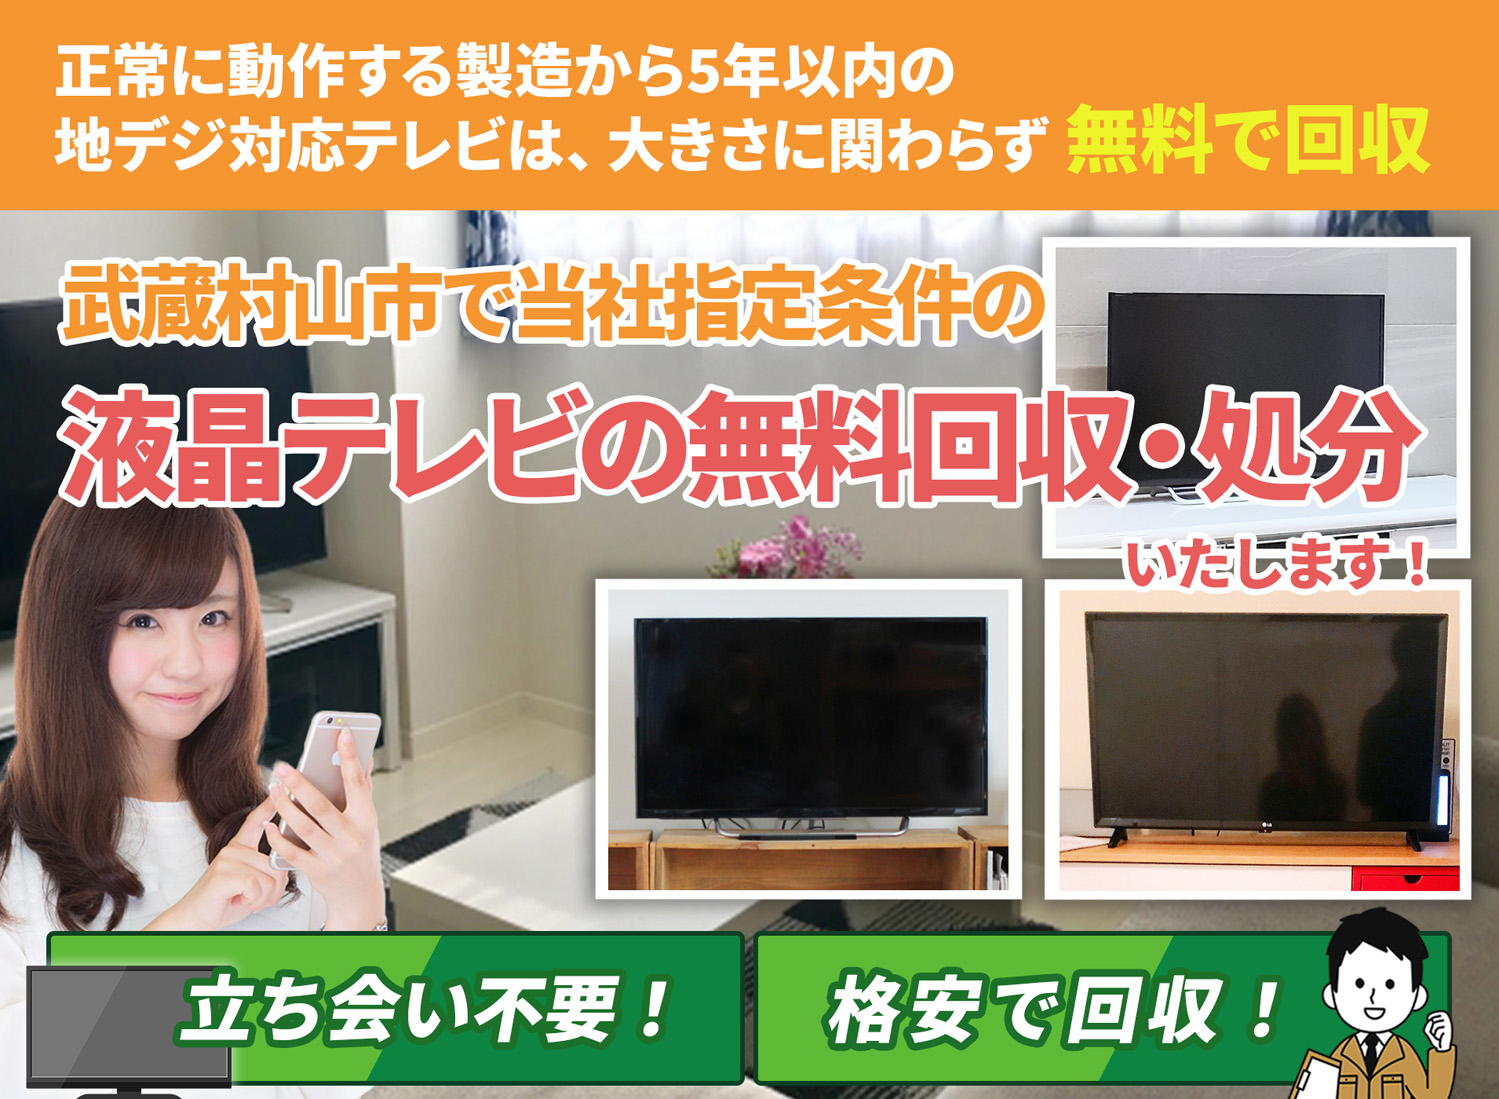 武蔵村山市のサービスで地域一番を目指す液晶テレビ無料回収処分隊の液晶テレビ無料回収サービス